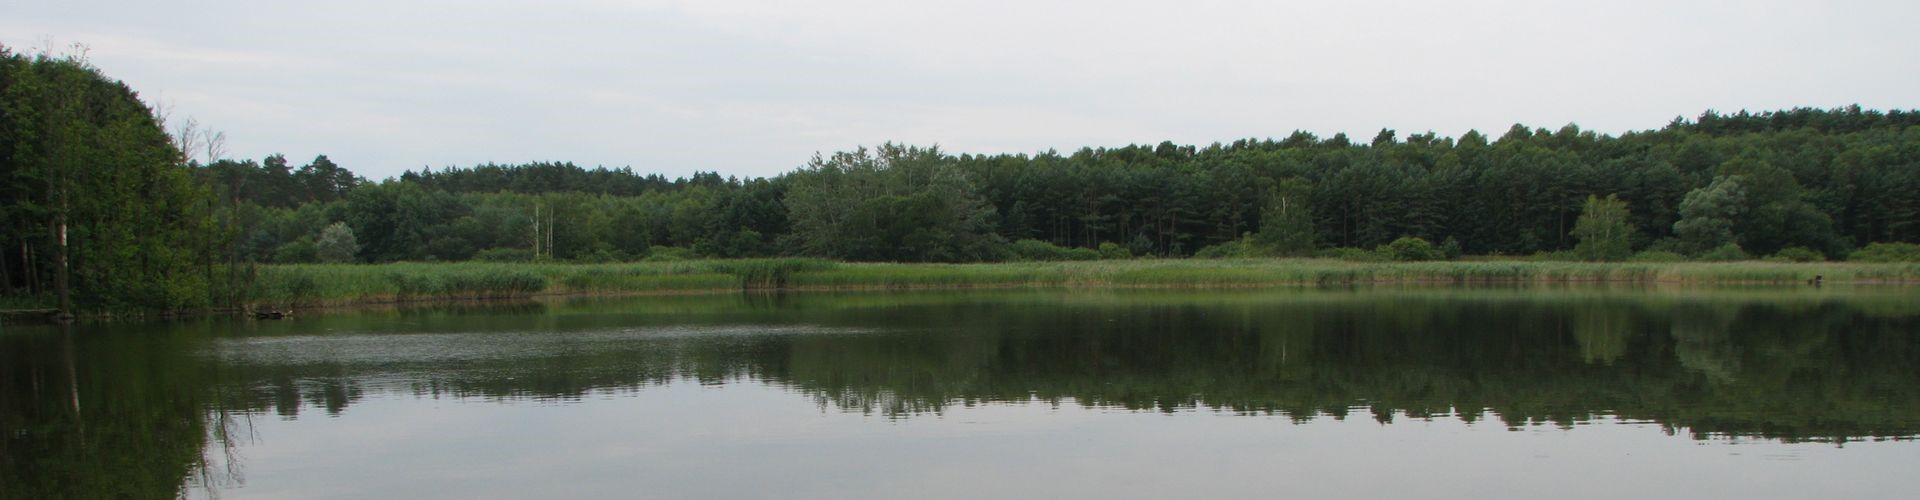 Jezioro Lachotka (zwane też Głochotczyno, Łachotka) położone na terenie gminy Szydłowo , powiat pilski , województwo wielkopolskie.